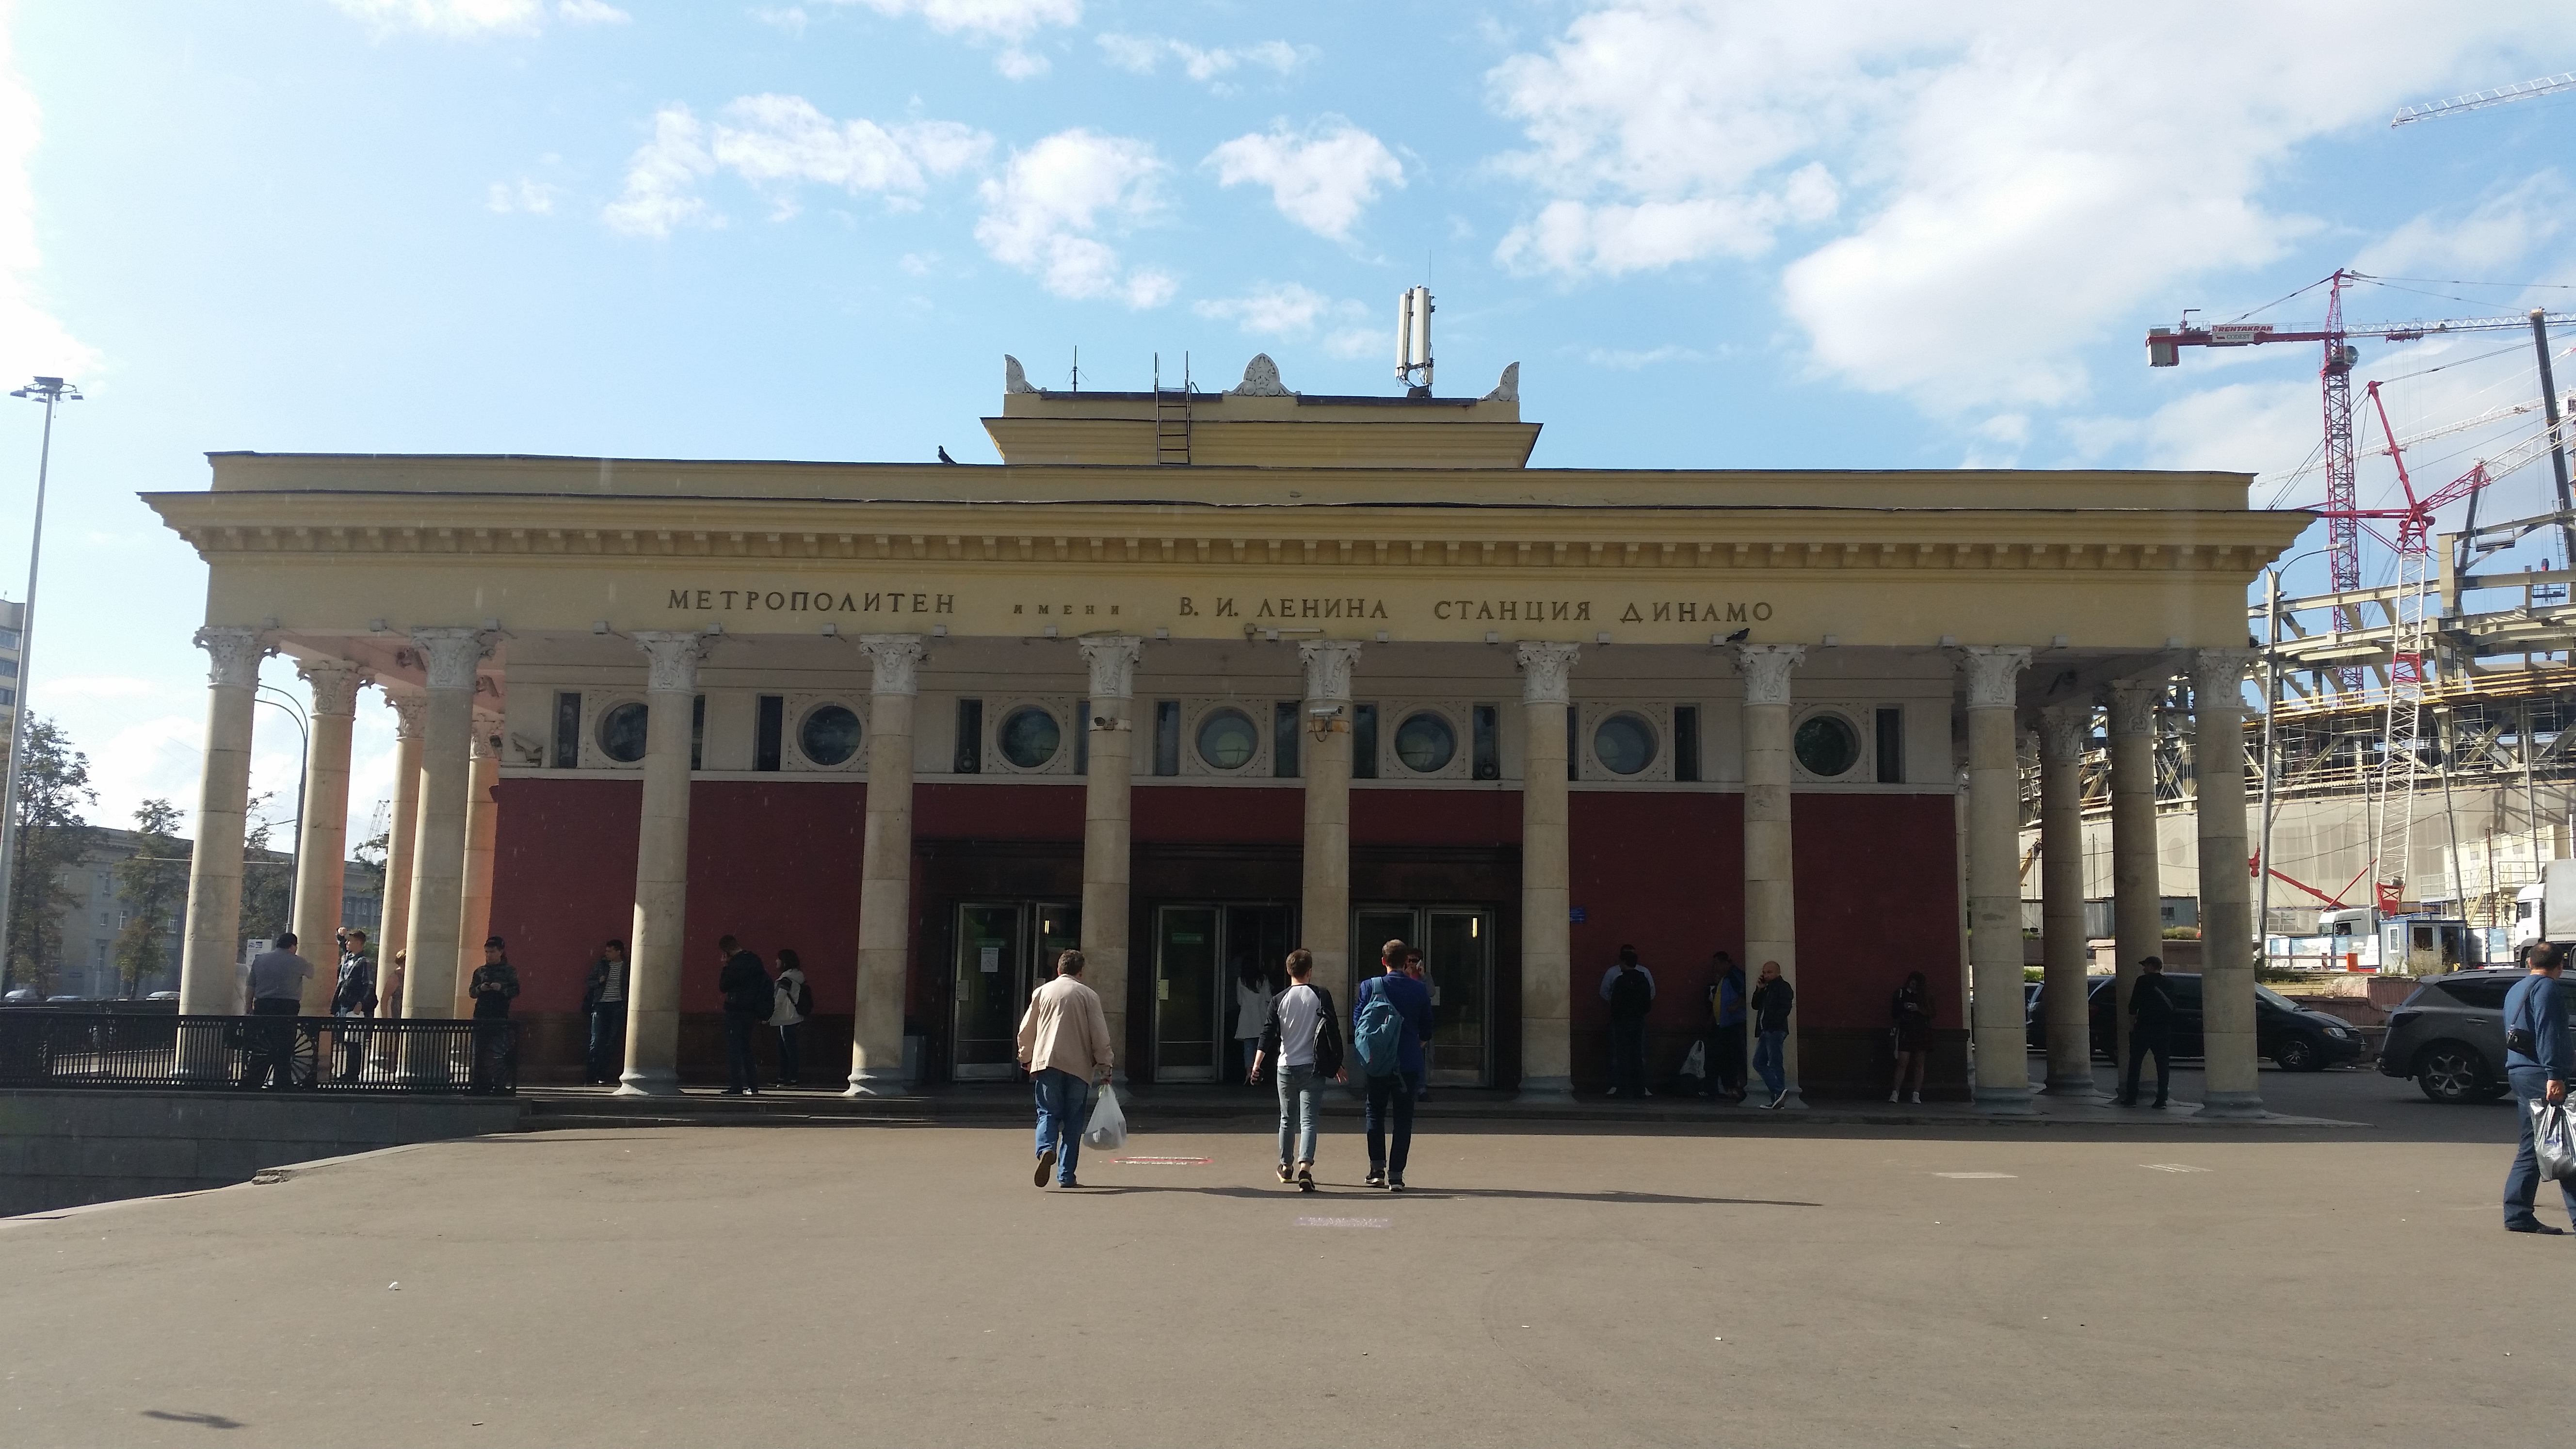 Исторический мраморный пол обнаружили реставраторы на станции метро "Динамо"